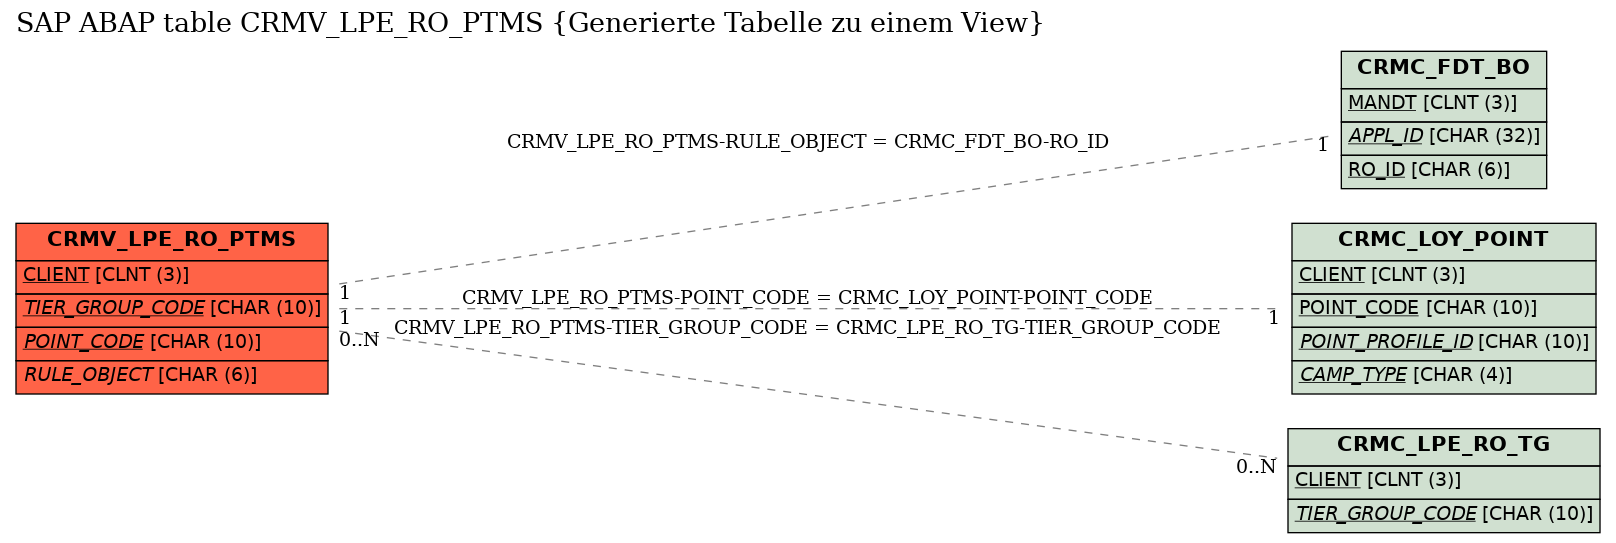 E-R Diagram for table CRMV_LPE_RO_PTMS (Generierte Tabelle zu einem View)